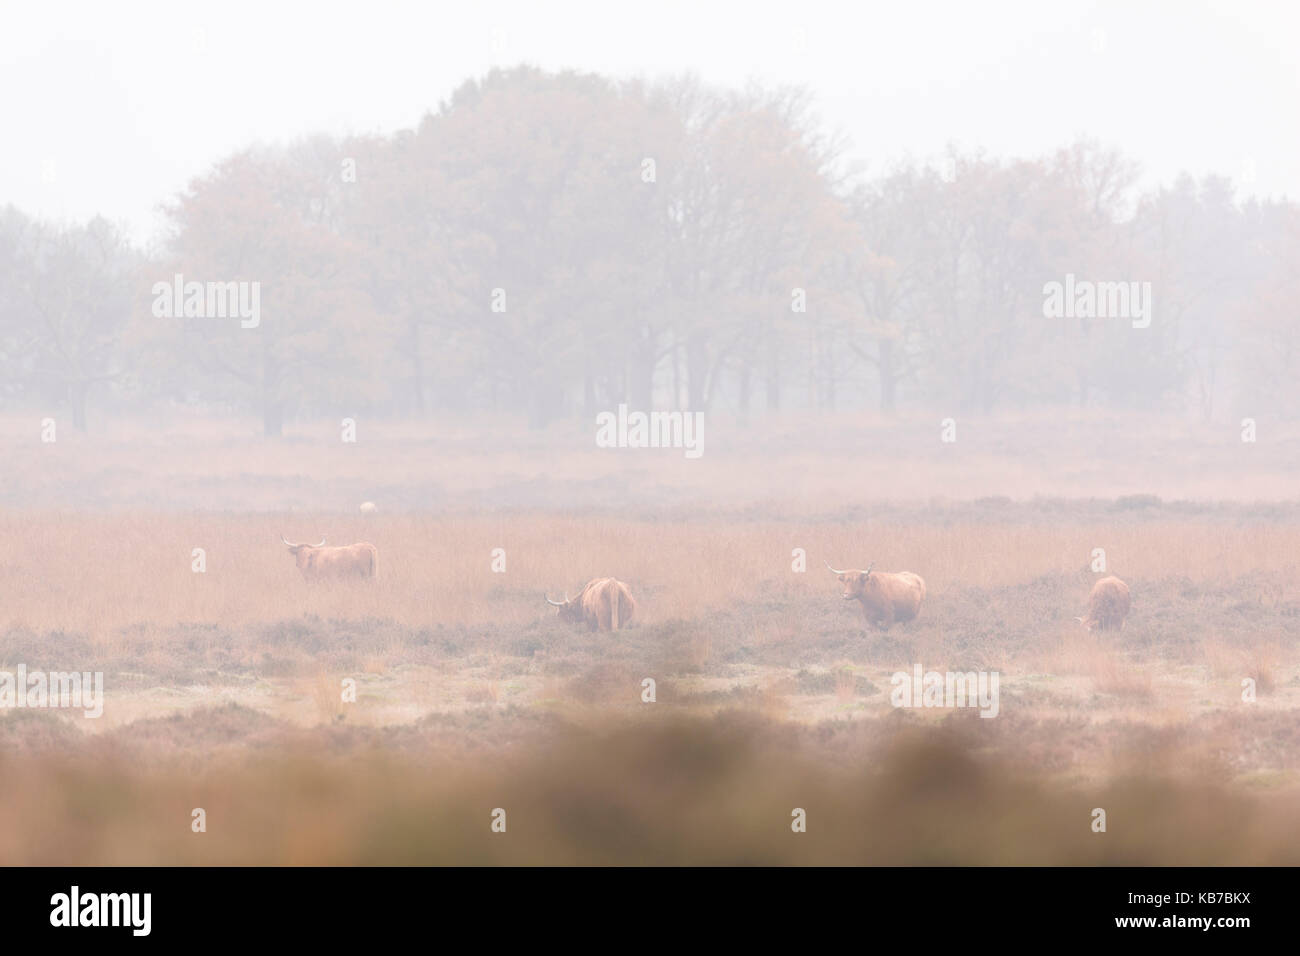 Highland cattle quatre dans une lande et une forêt en arrière-plan sur un matin brumeux, aux Pays-Bas, Gueldre, deelerwoud Banque D'Images